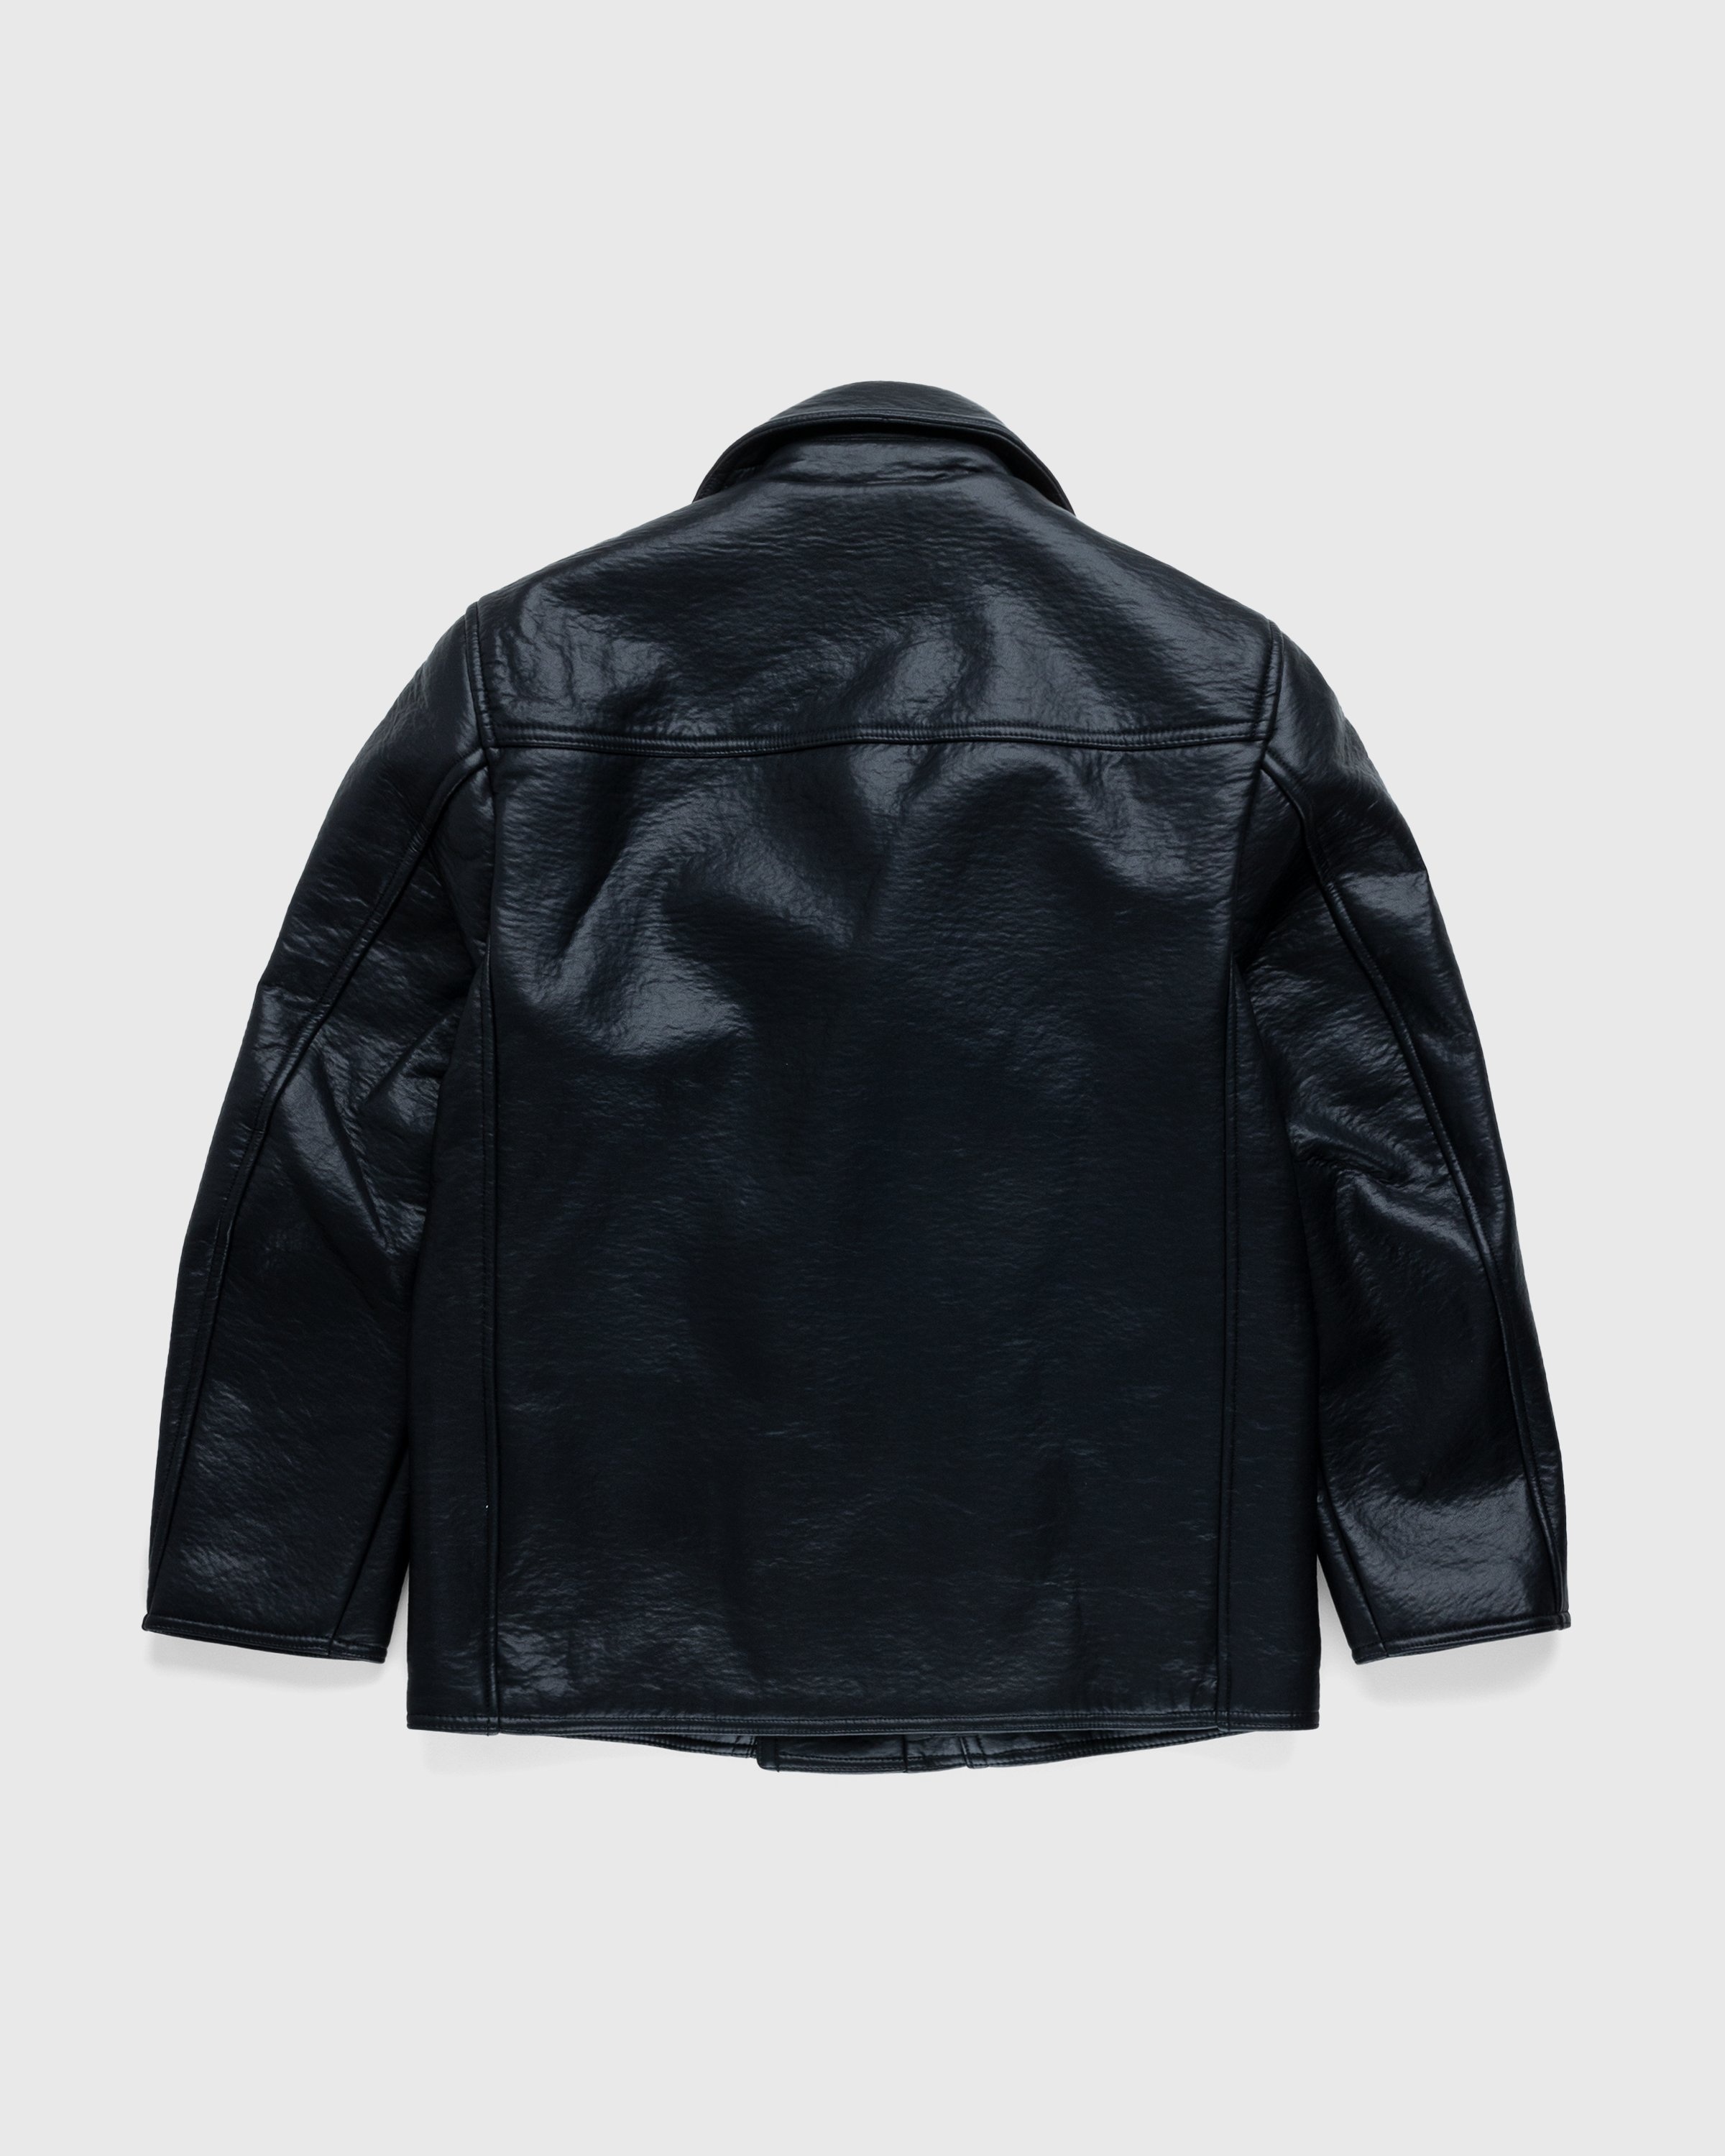 Diesel – Rego Biker Jacket Black - Leather Jackets - Black - Image 2